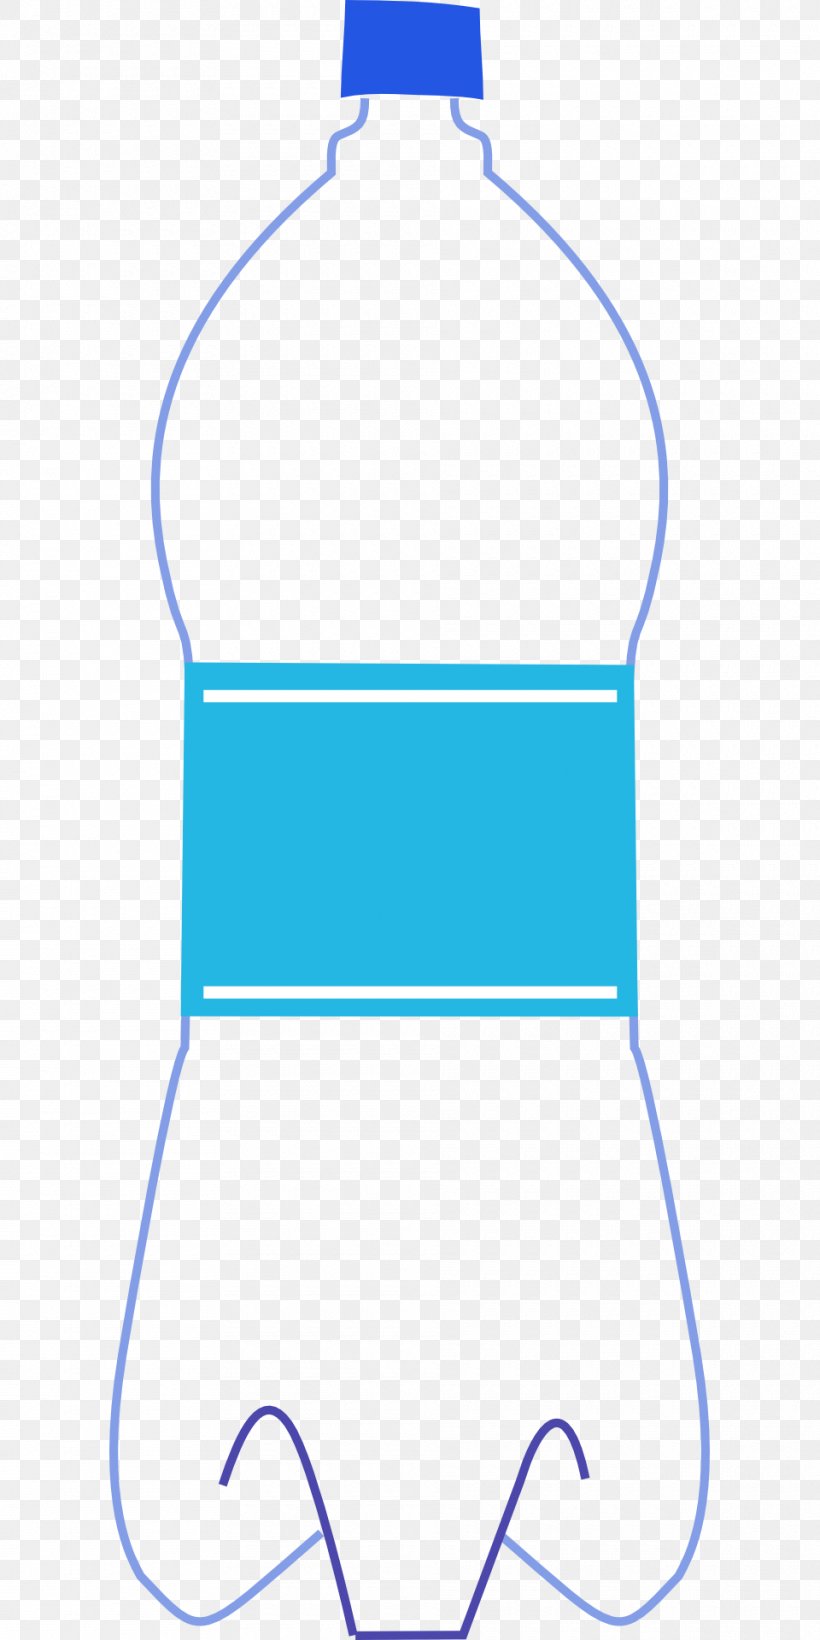 Plastic Bag Plastic Bottle Clip Art, PNG, 960x1920px, Plastic Bag, Area, Blue, Bottle, Clothing Download Free